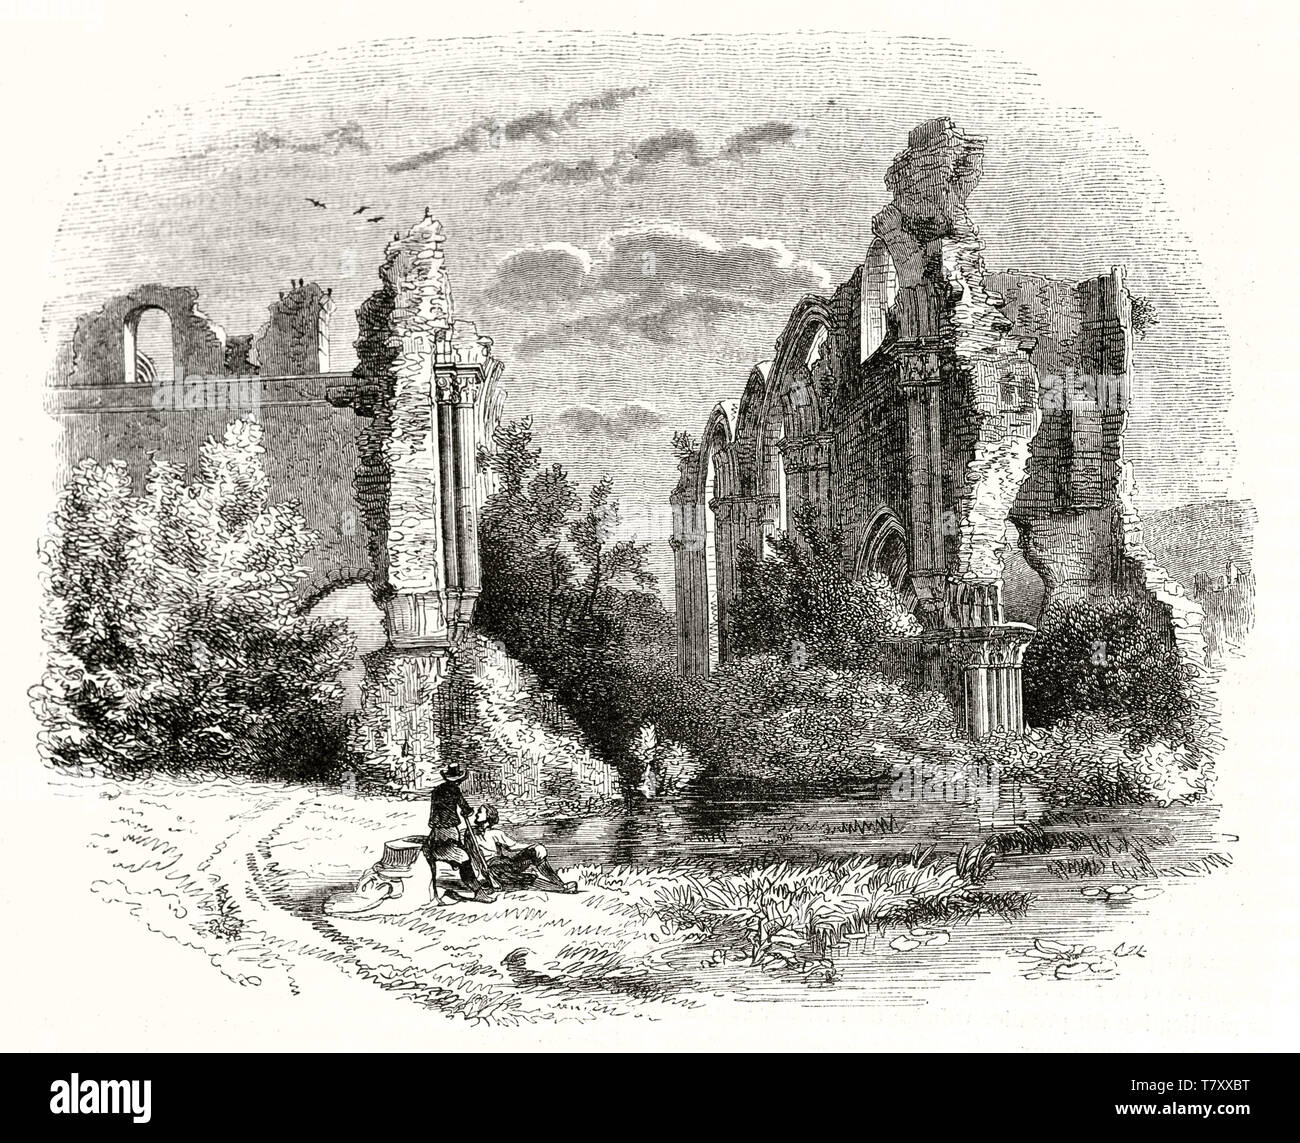 Paar kleine Menschen, die allein in der Nähe der Ruinen einer alten Abtei von der Natur umgeben. Alte Ansicht von Orval Abbey Ruinen Belgien. Die durch unbekannte Thema publ. Auf Magasin Pittoresque Paris 1848 Stockfoto